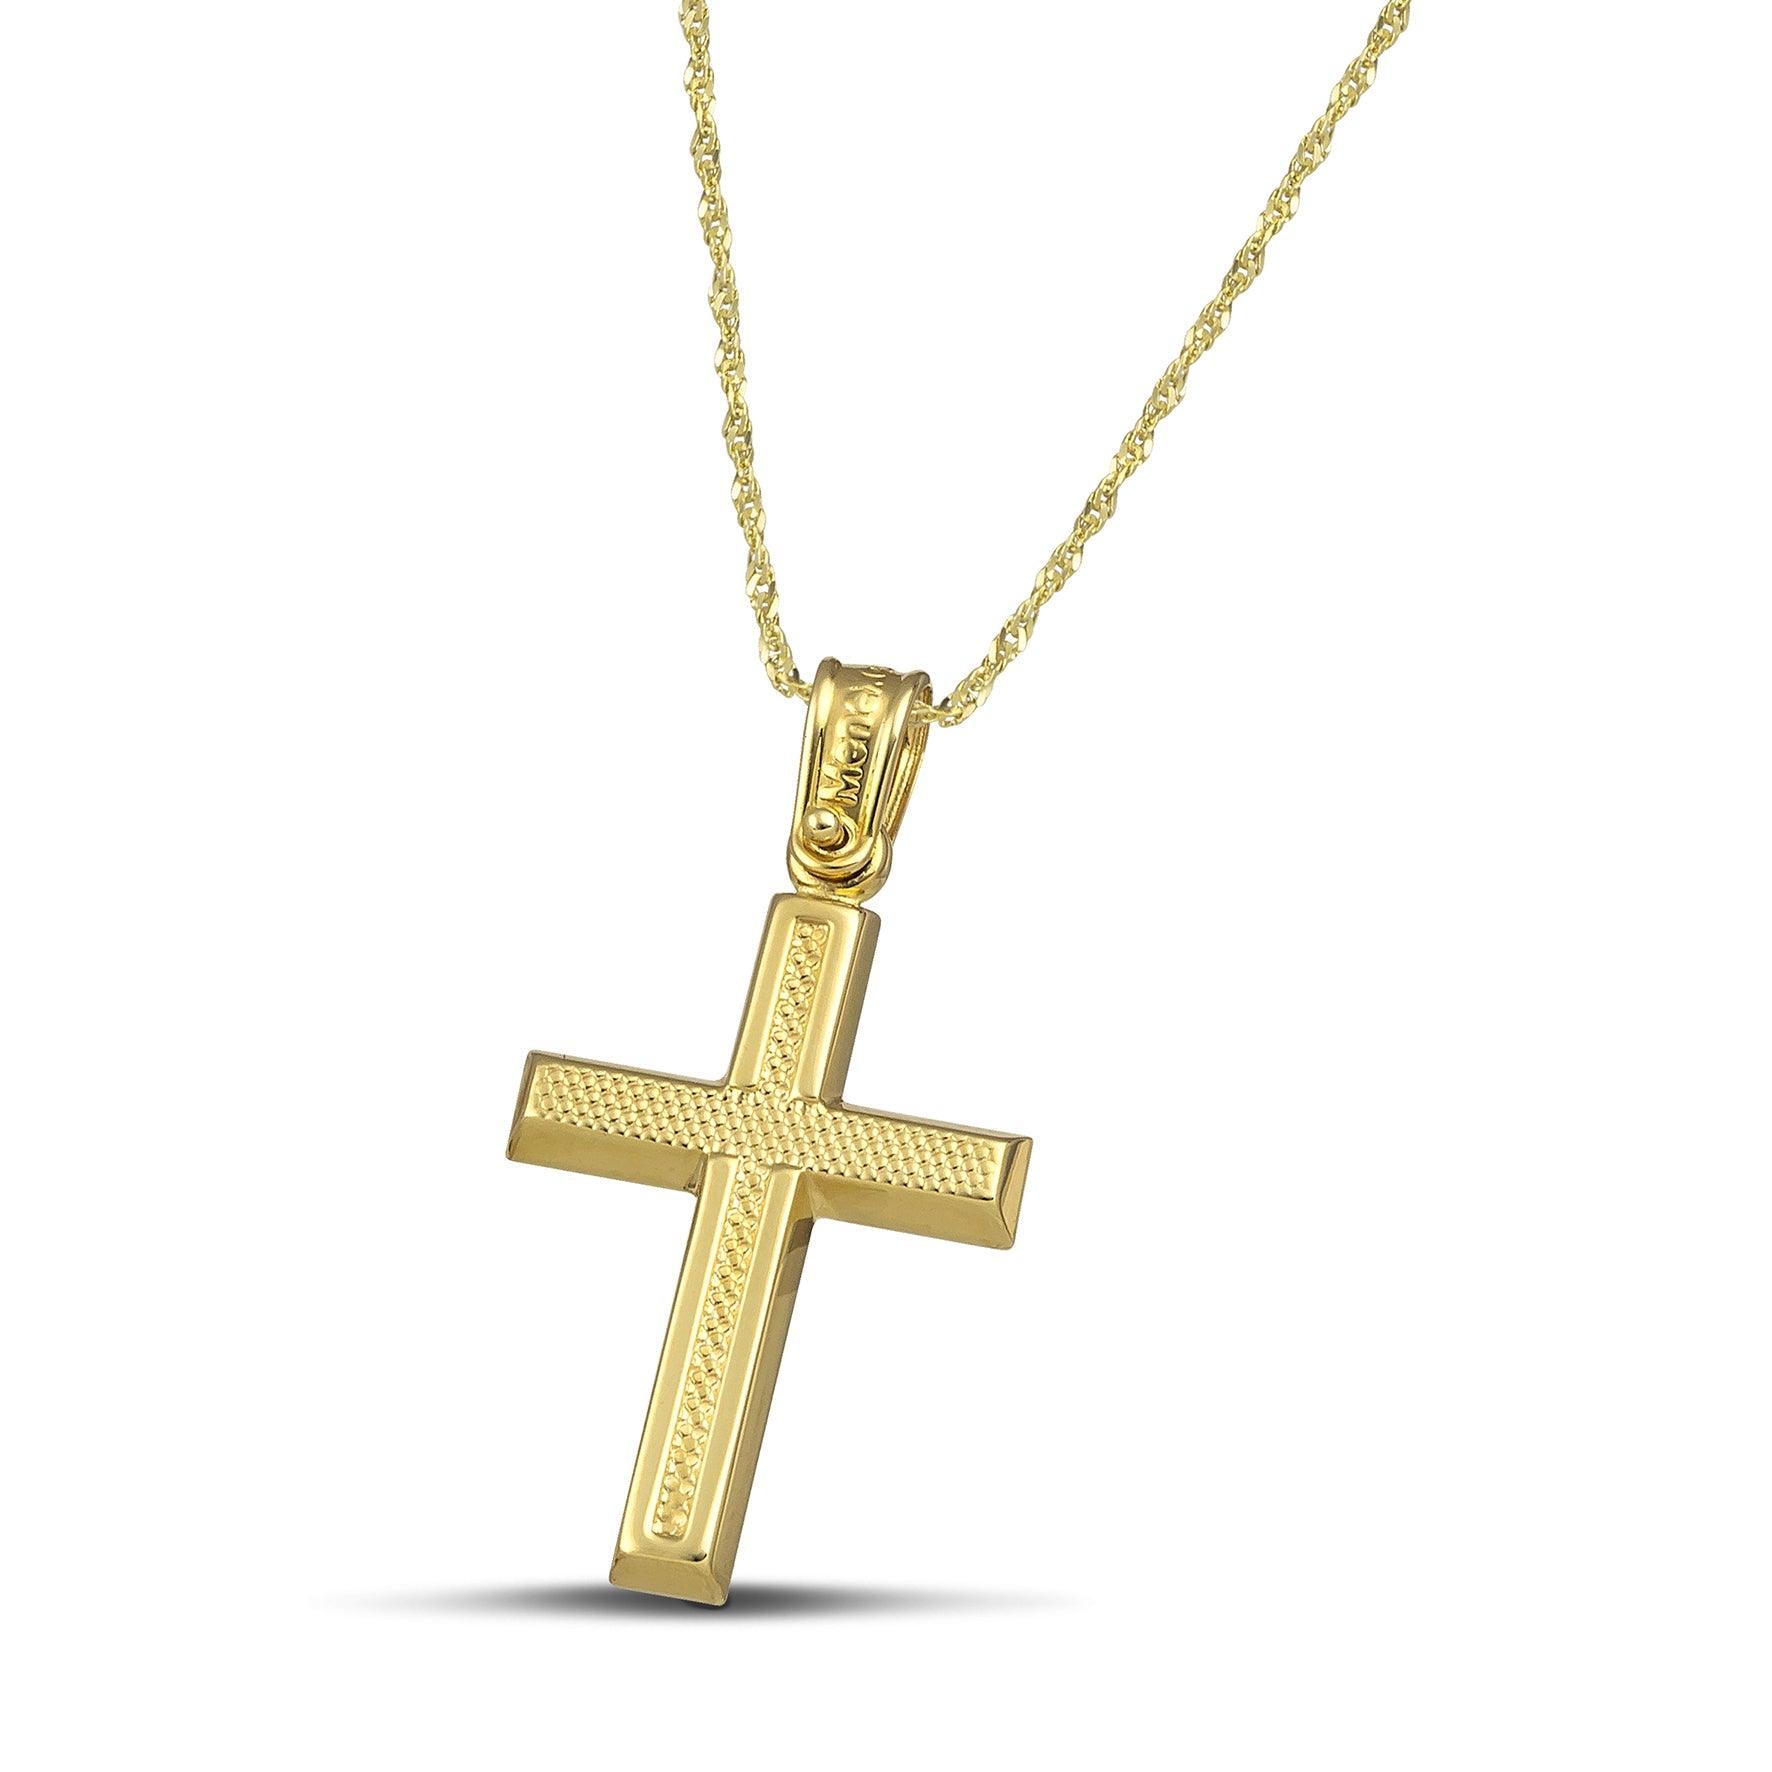 Μοντέρνος σταυρός για κορίτσι από χρυσό Κ14 ανάγλυφος. Φορεμένος σε λεπτή, στριφτή αλυσίδα.